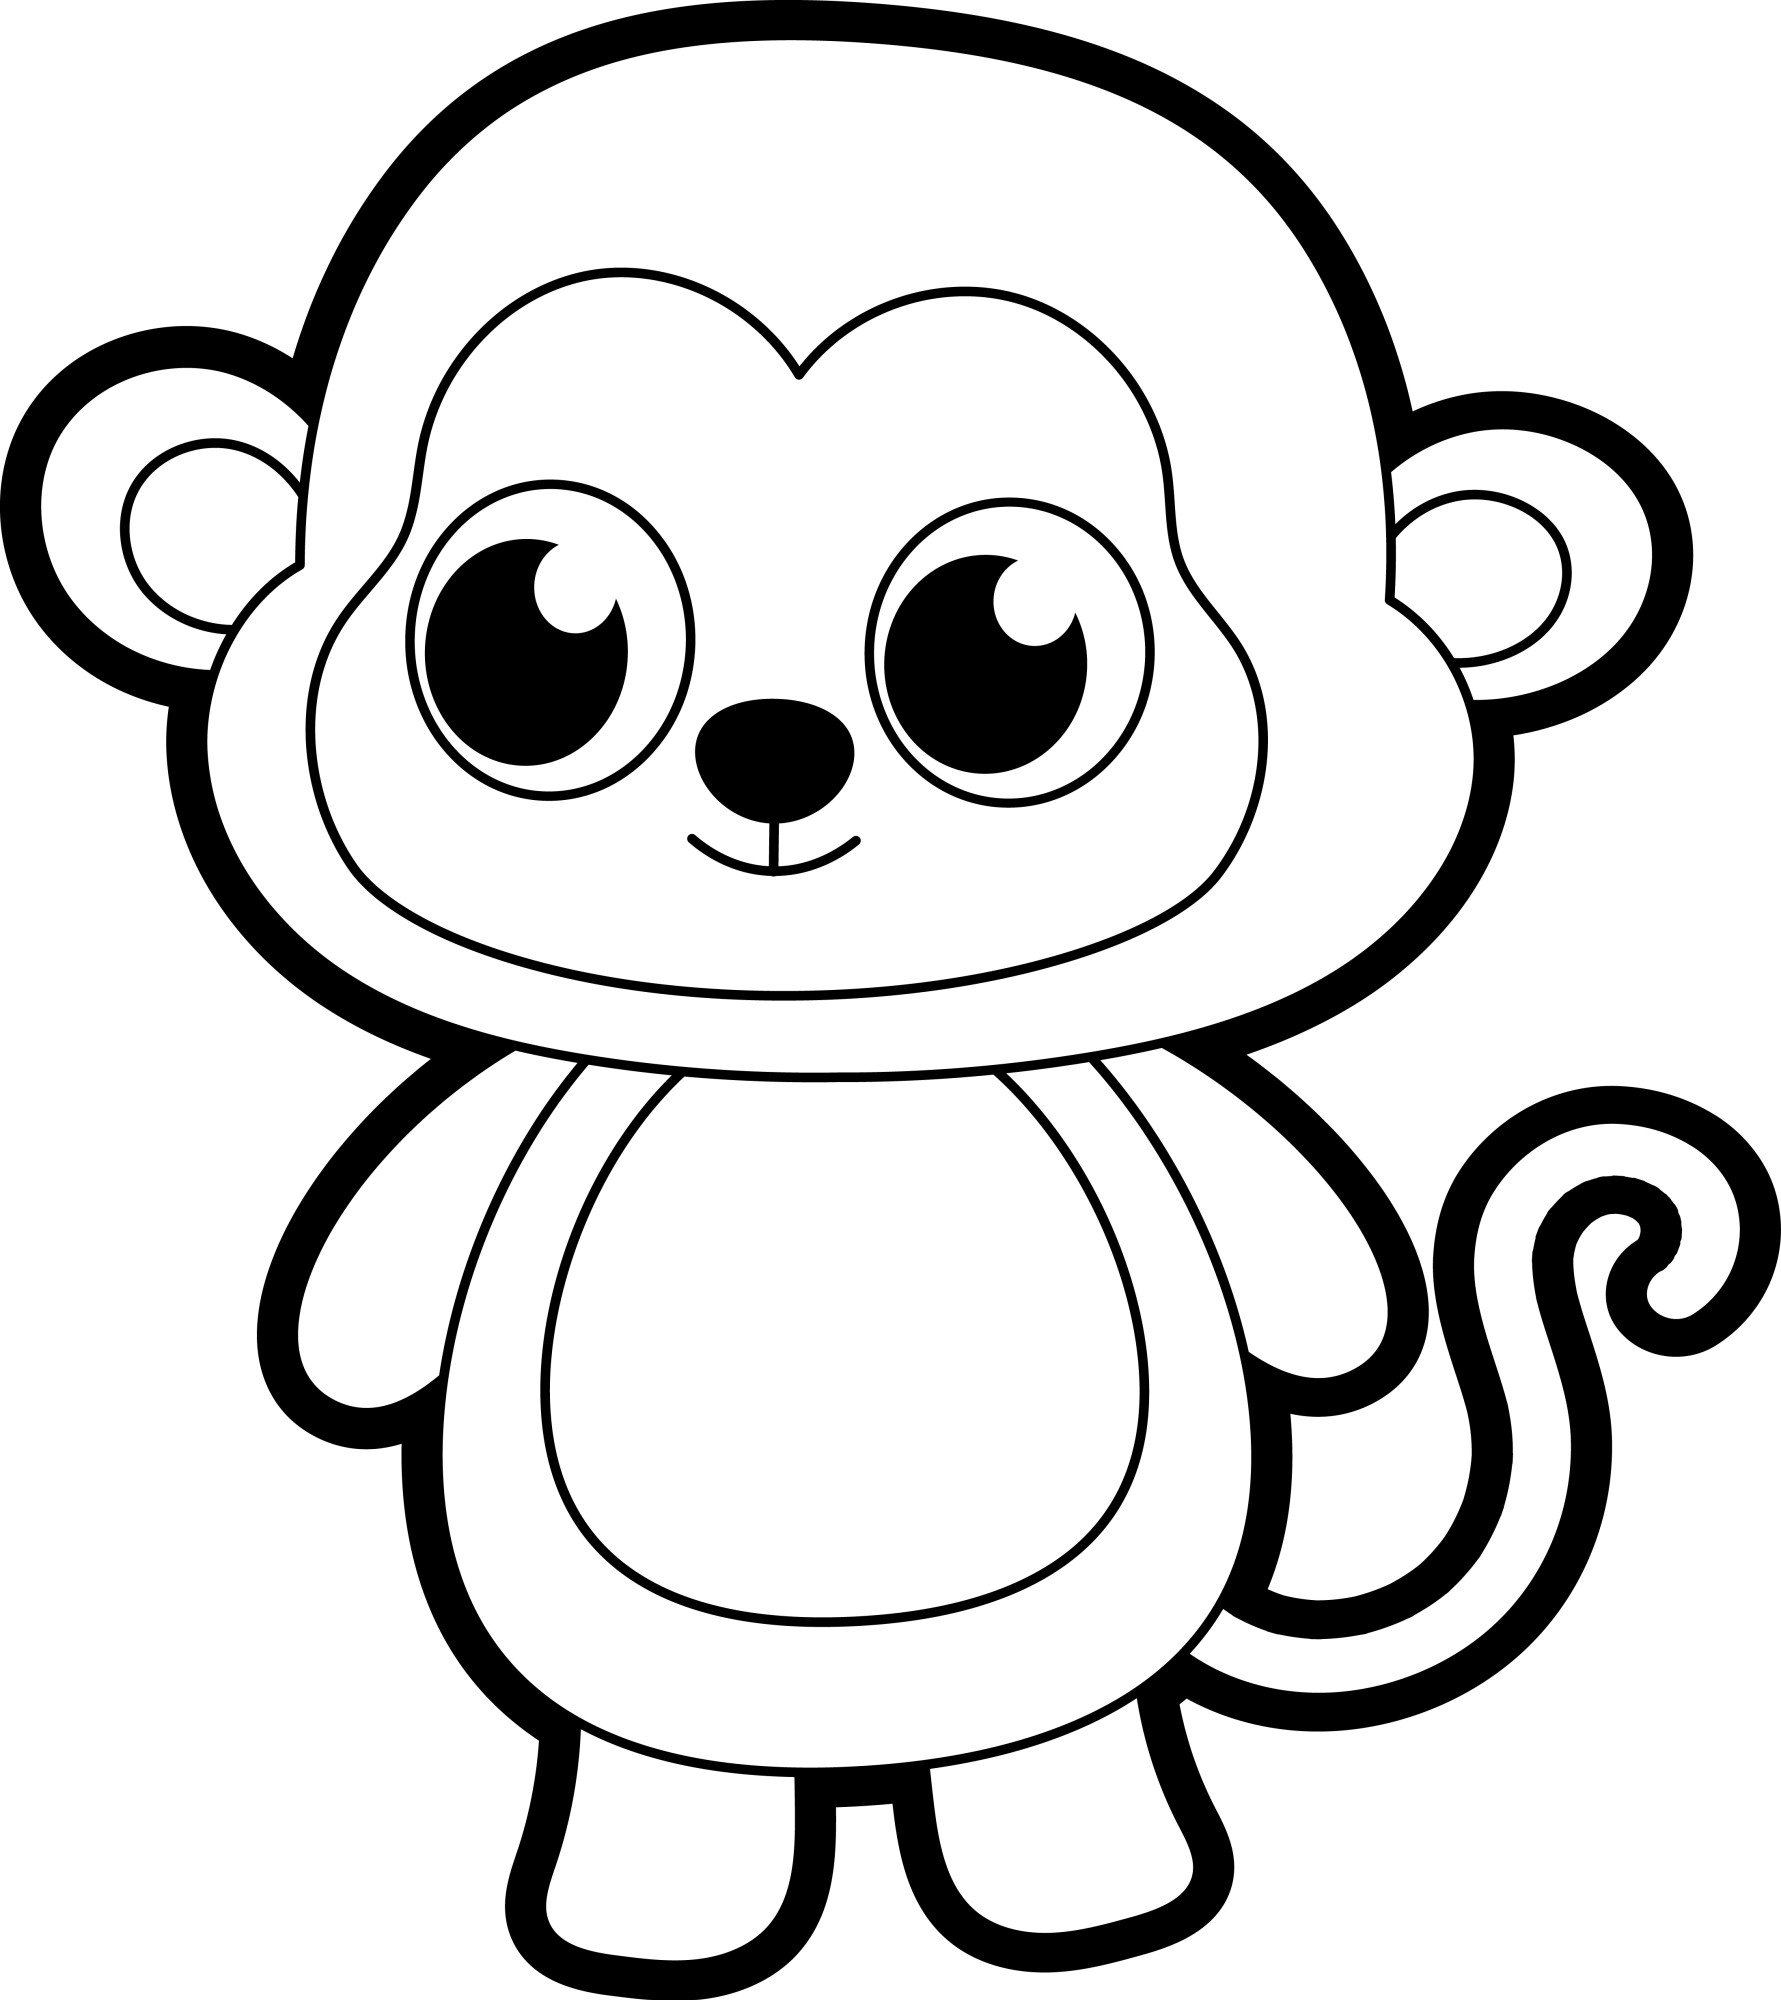 Раскраска для детей: контур забавной обезьянки